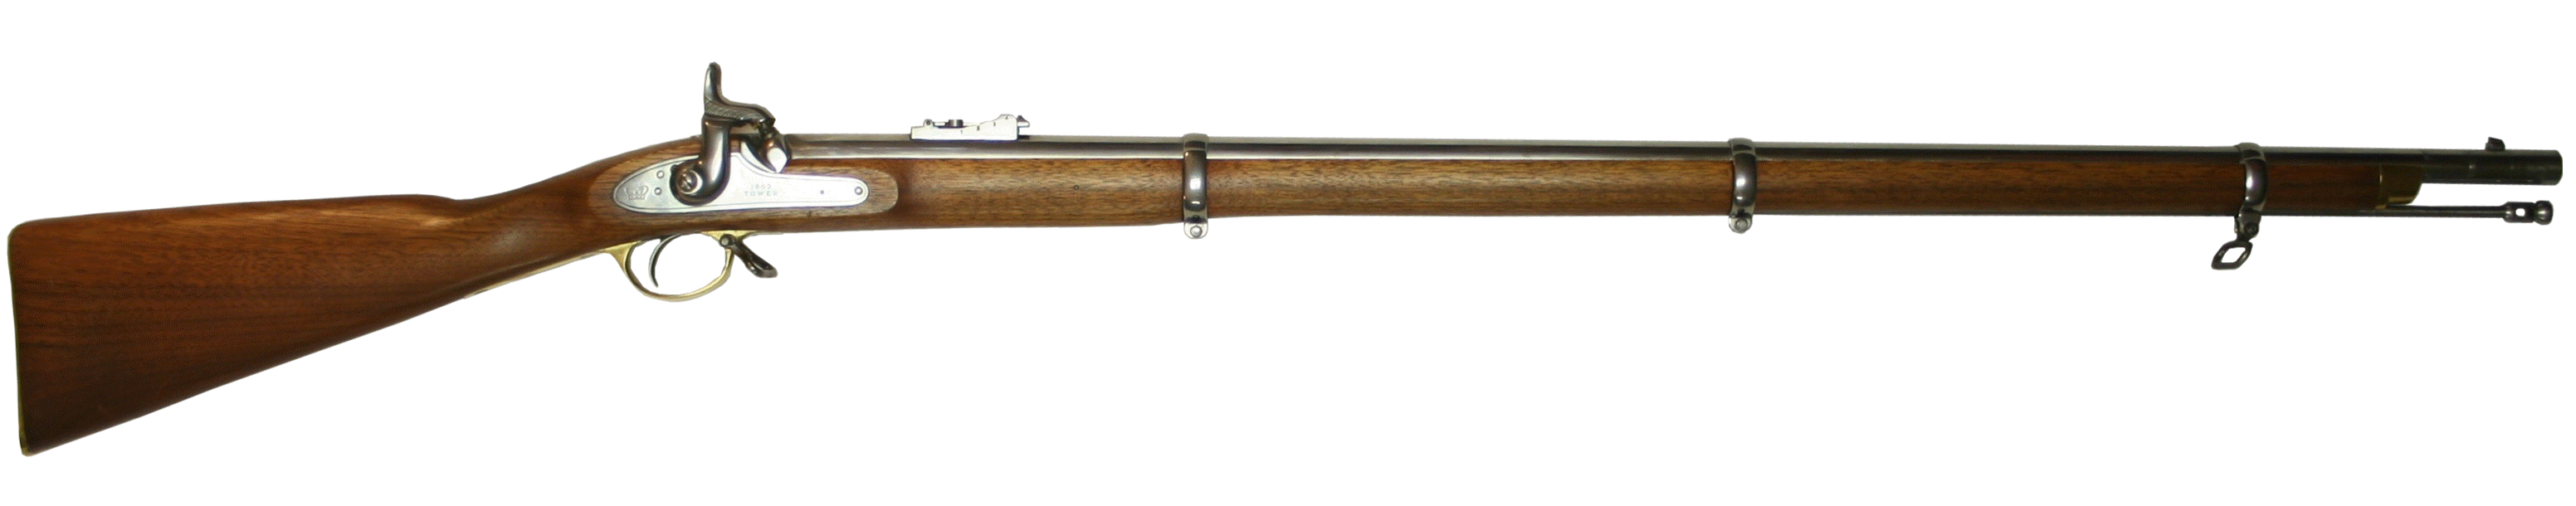 pistol clipart civil war gun